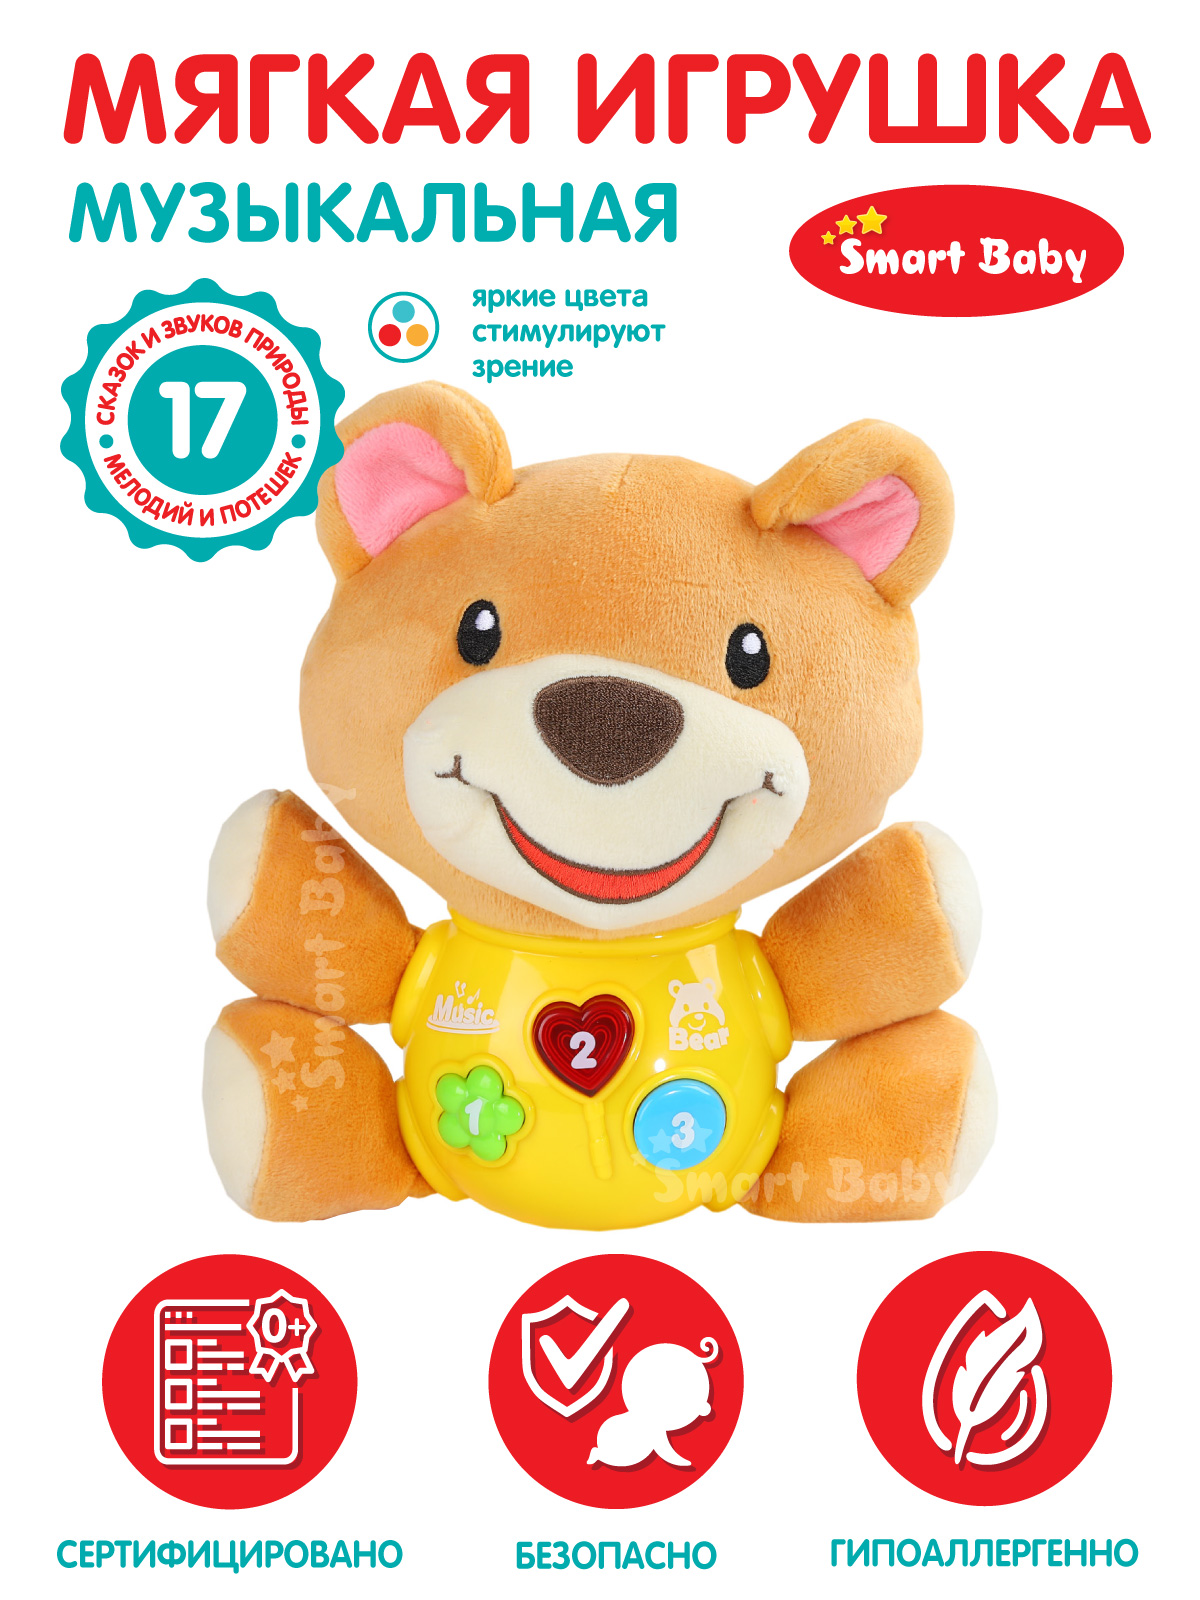 Развивающая мягкая игрушка Smart Baby Мишка ТМ Smart Baby, свет, звук, JB0334072 развивающая игрушка сказка медведь 51114